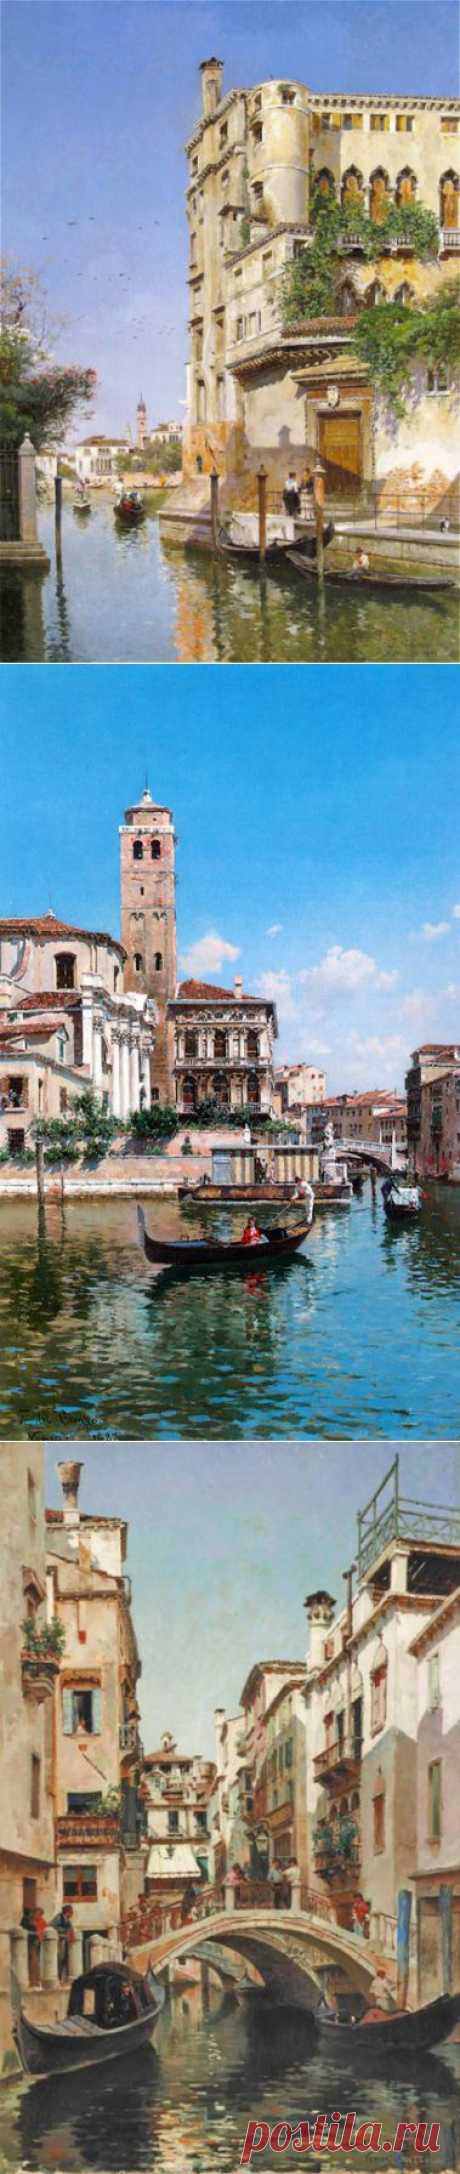 Венеция глазами Federico del Campo | 5минутка